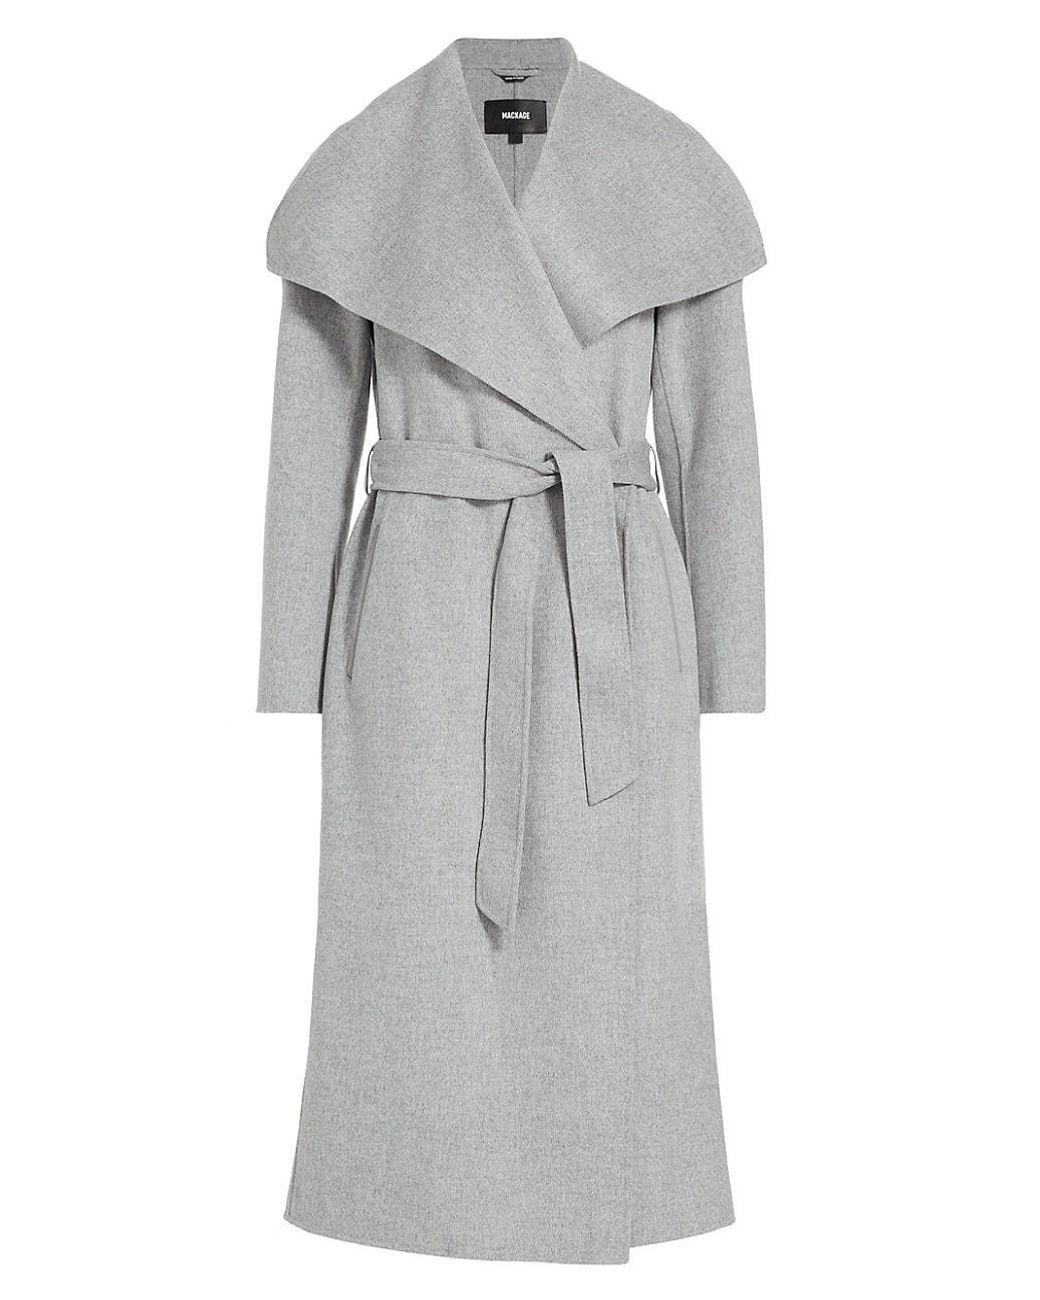 Mackage Women's Azra Wool Wrap Coat - Tan/Beige - Size M - Light Camel